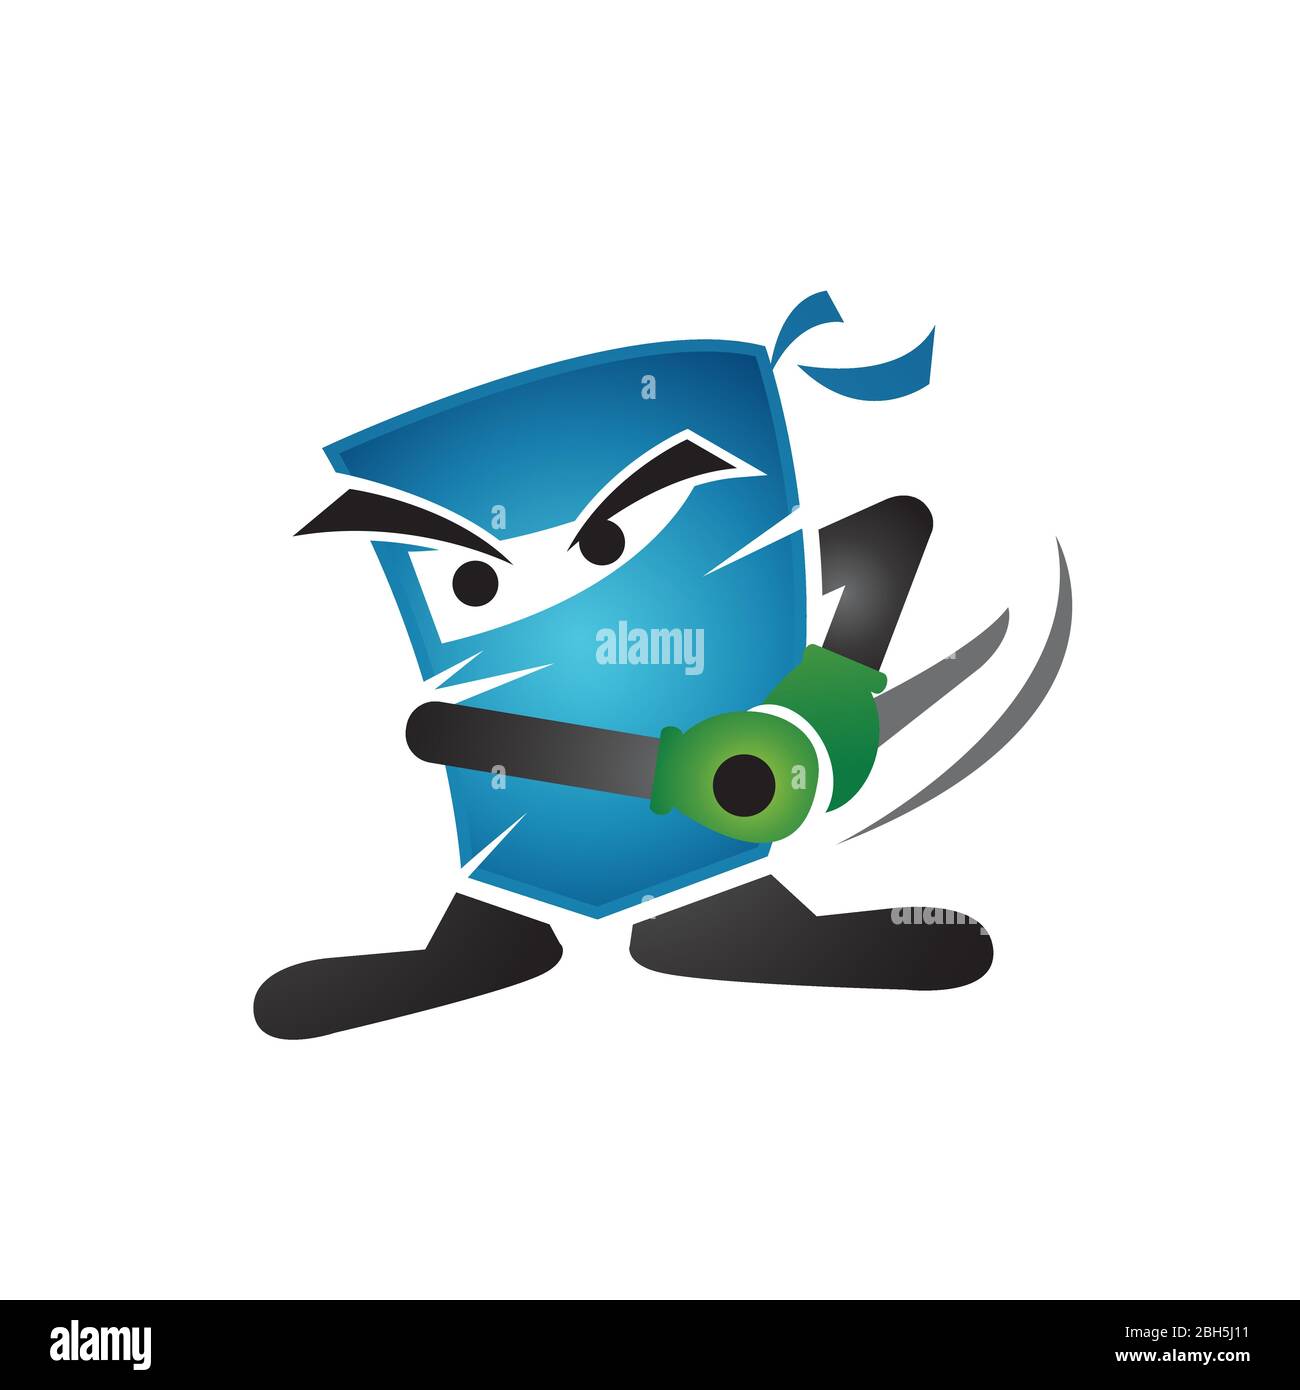 Illustration of square shape cartoon Ninja logo vector sign symbol vector illustration EPS, JPEG Stock Vector